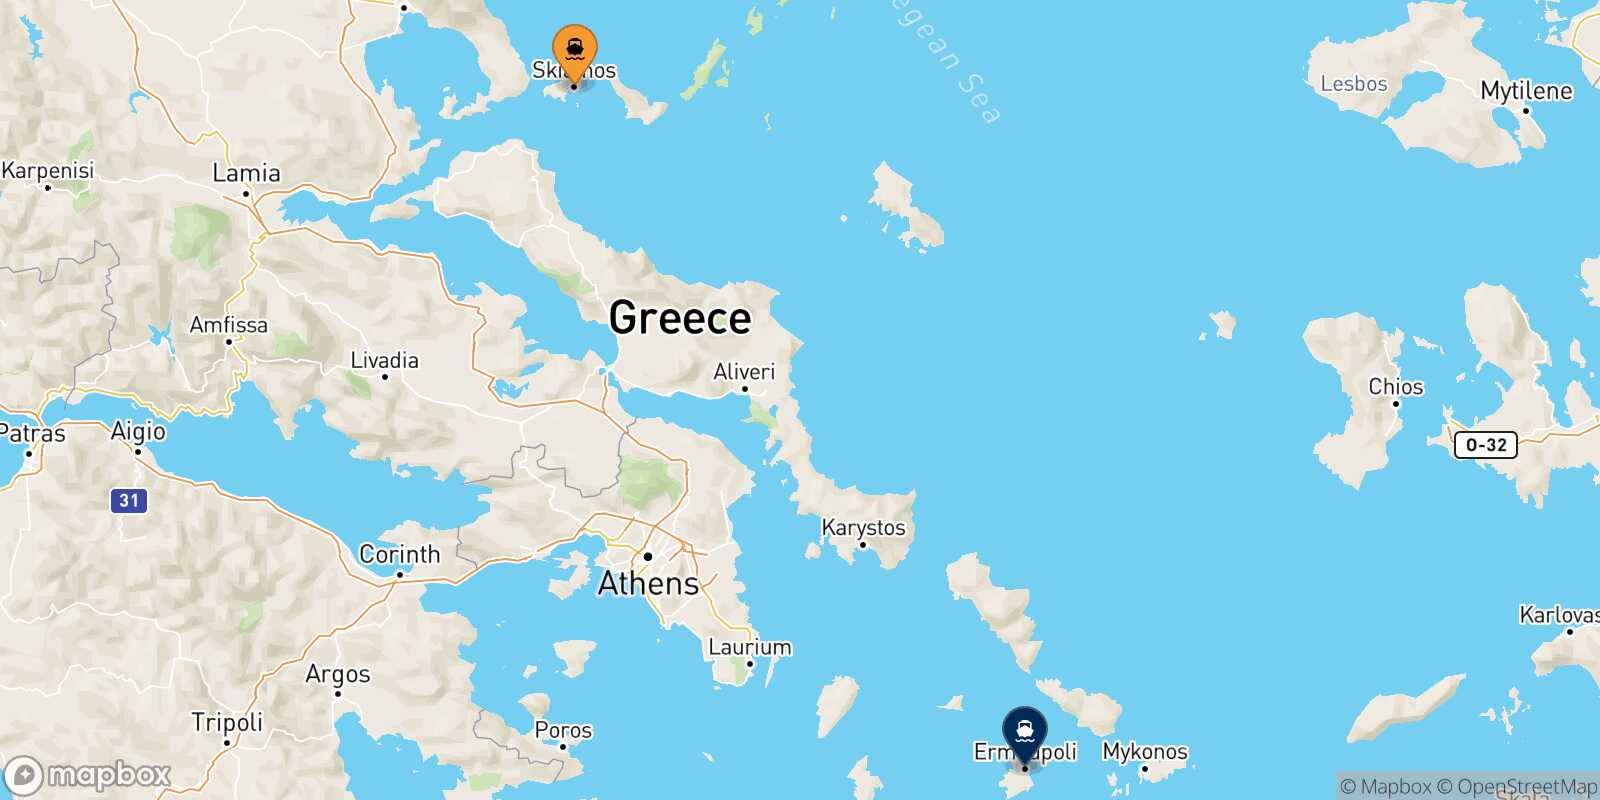 Skiathos Syros route map